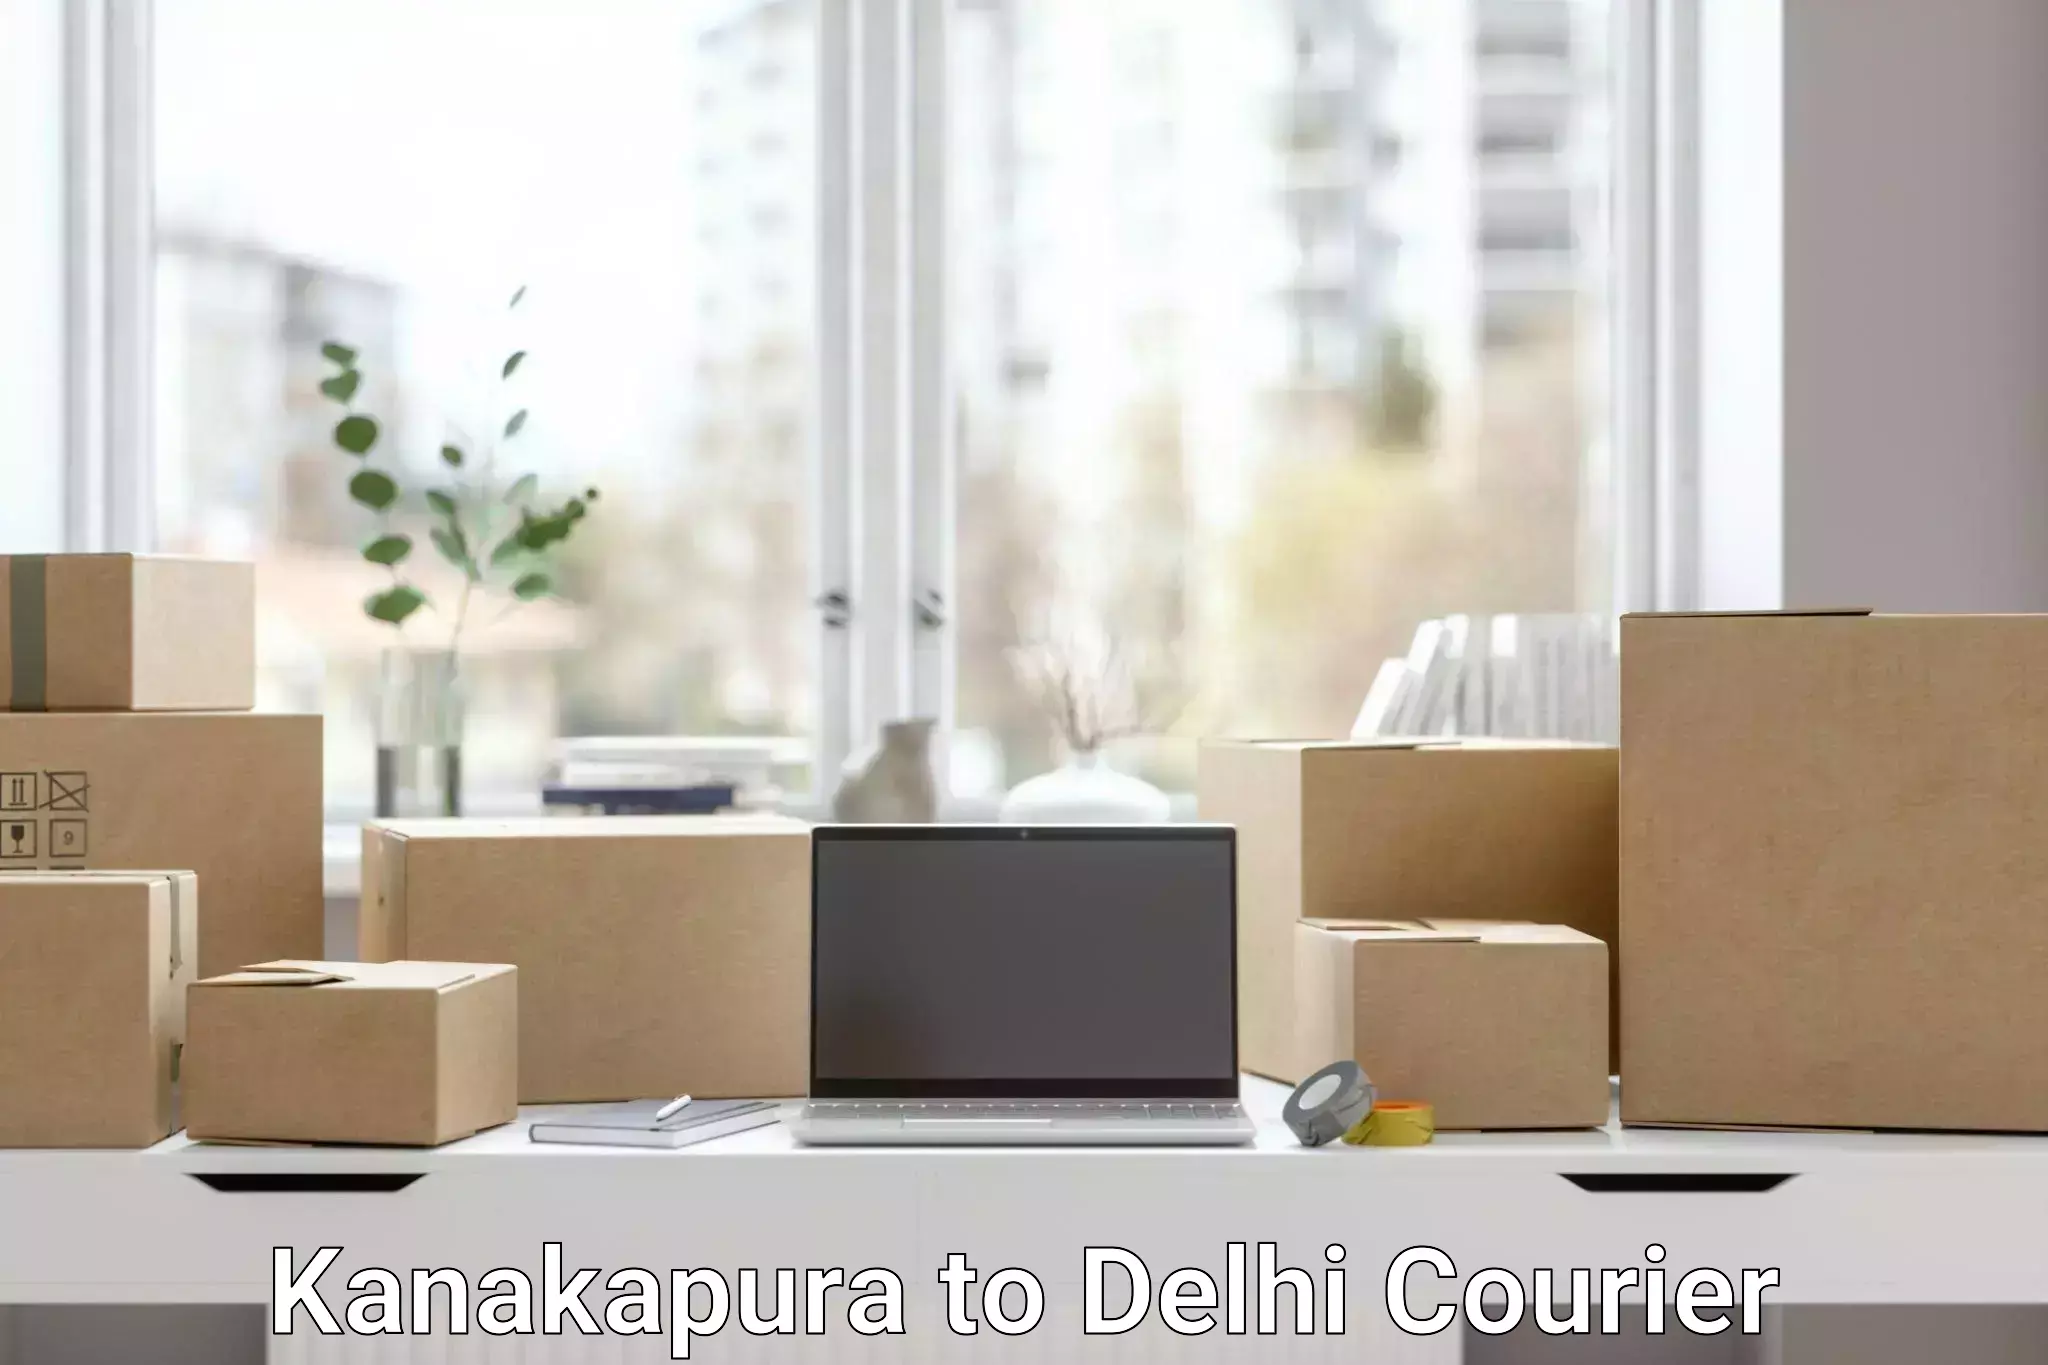 Round-the-clock parcel delivery Kanakapura to Kalkaji